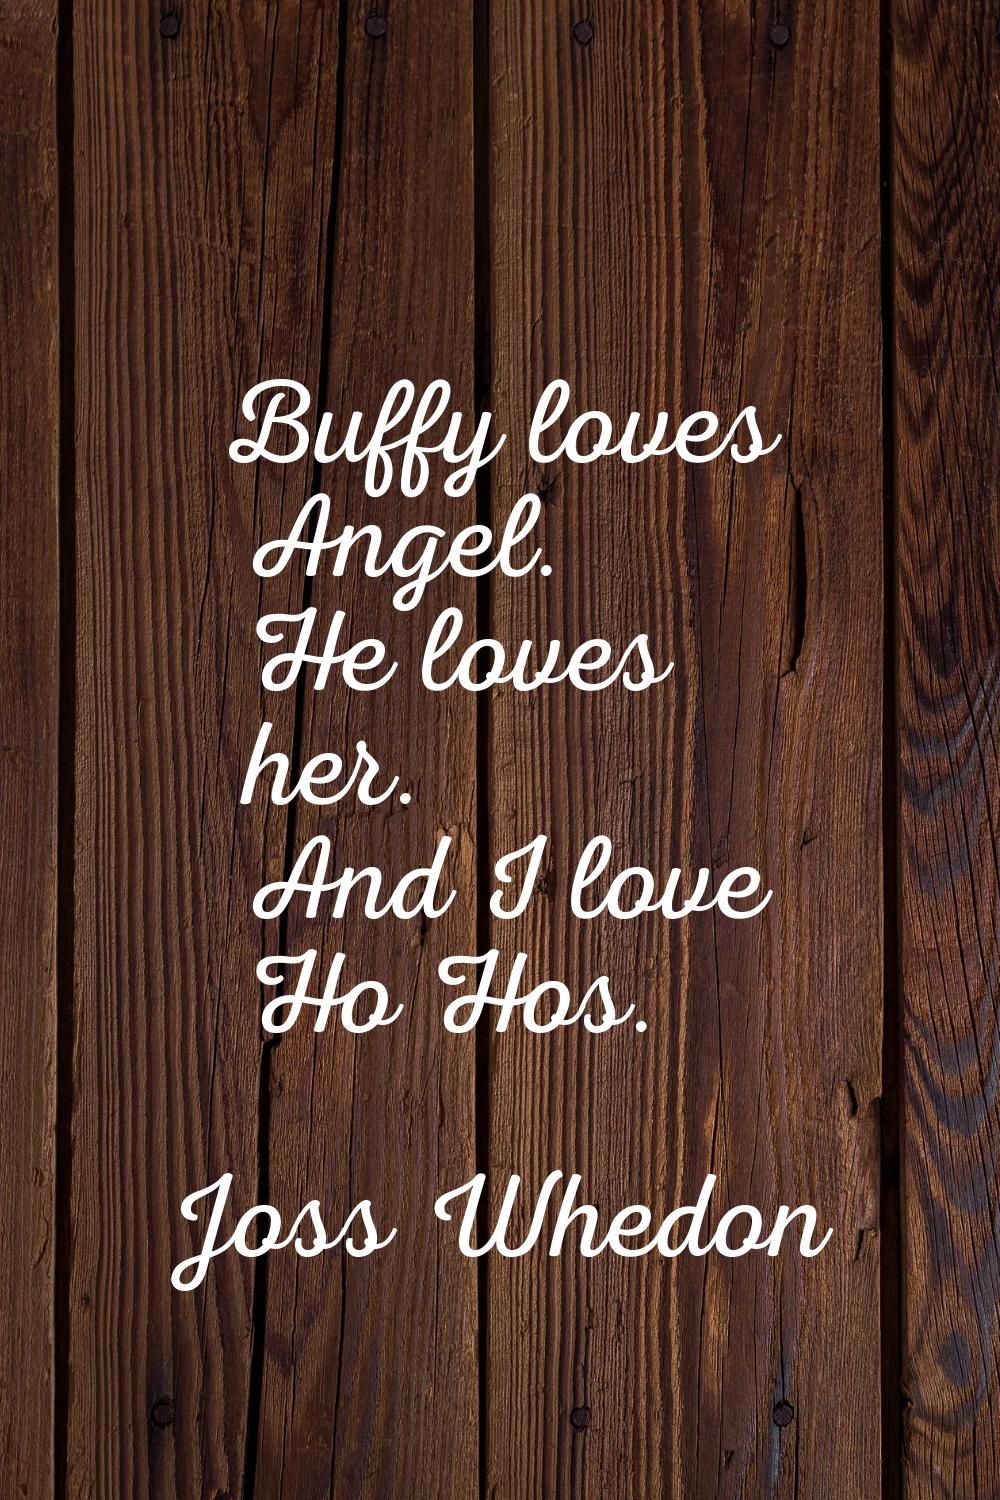 Buffy loves Angel. He loves her. And I love Ho Hos.